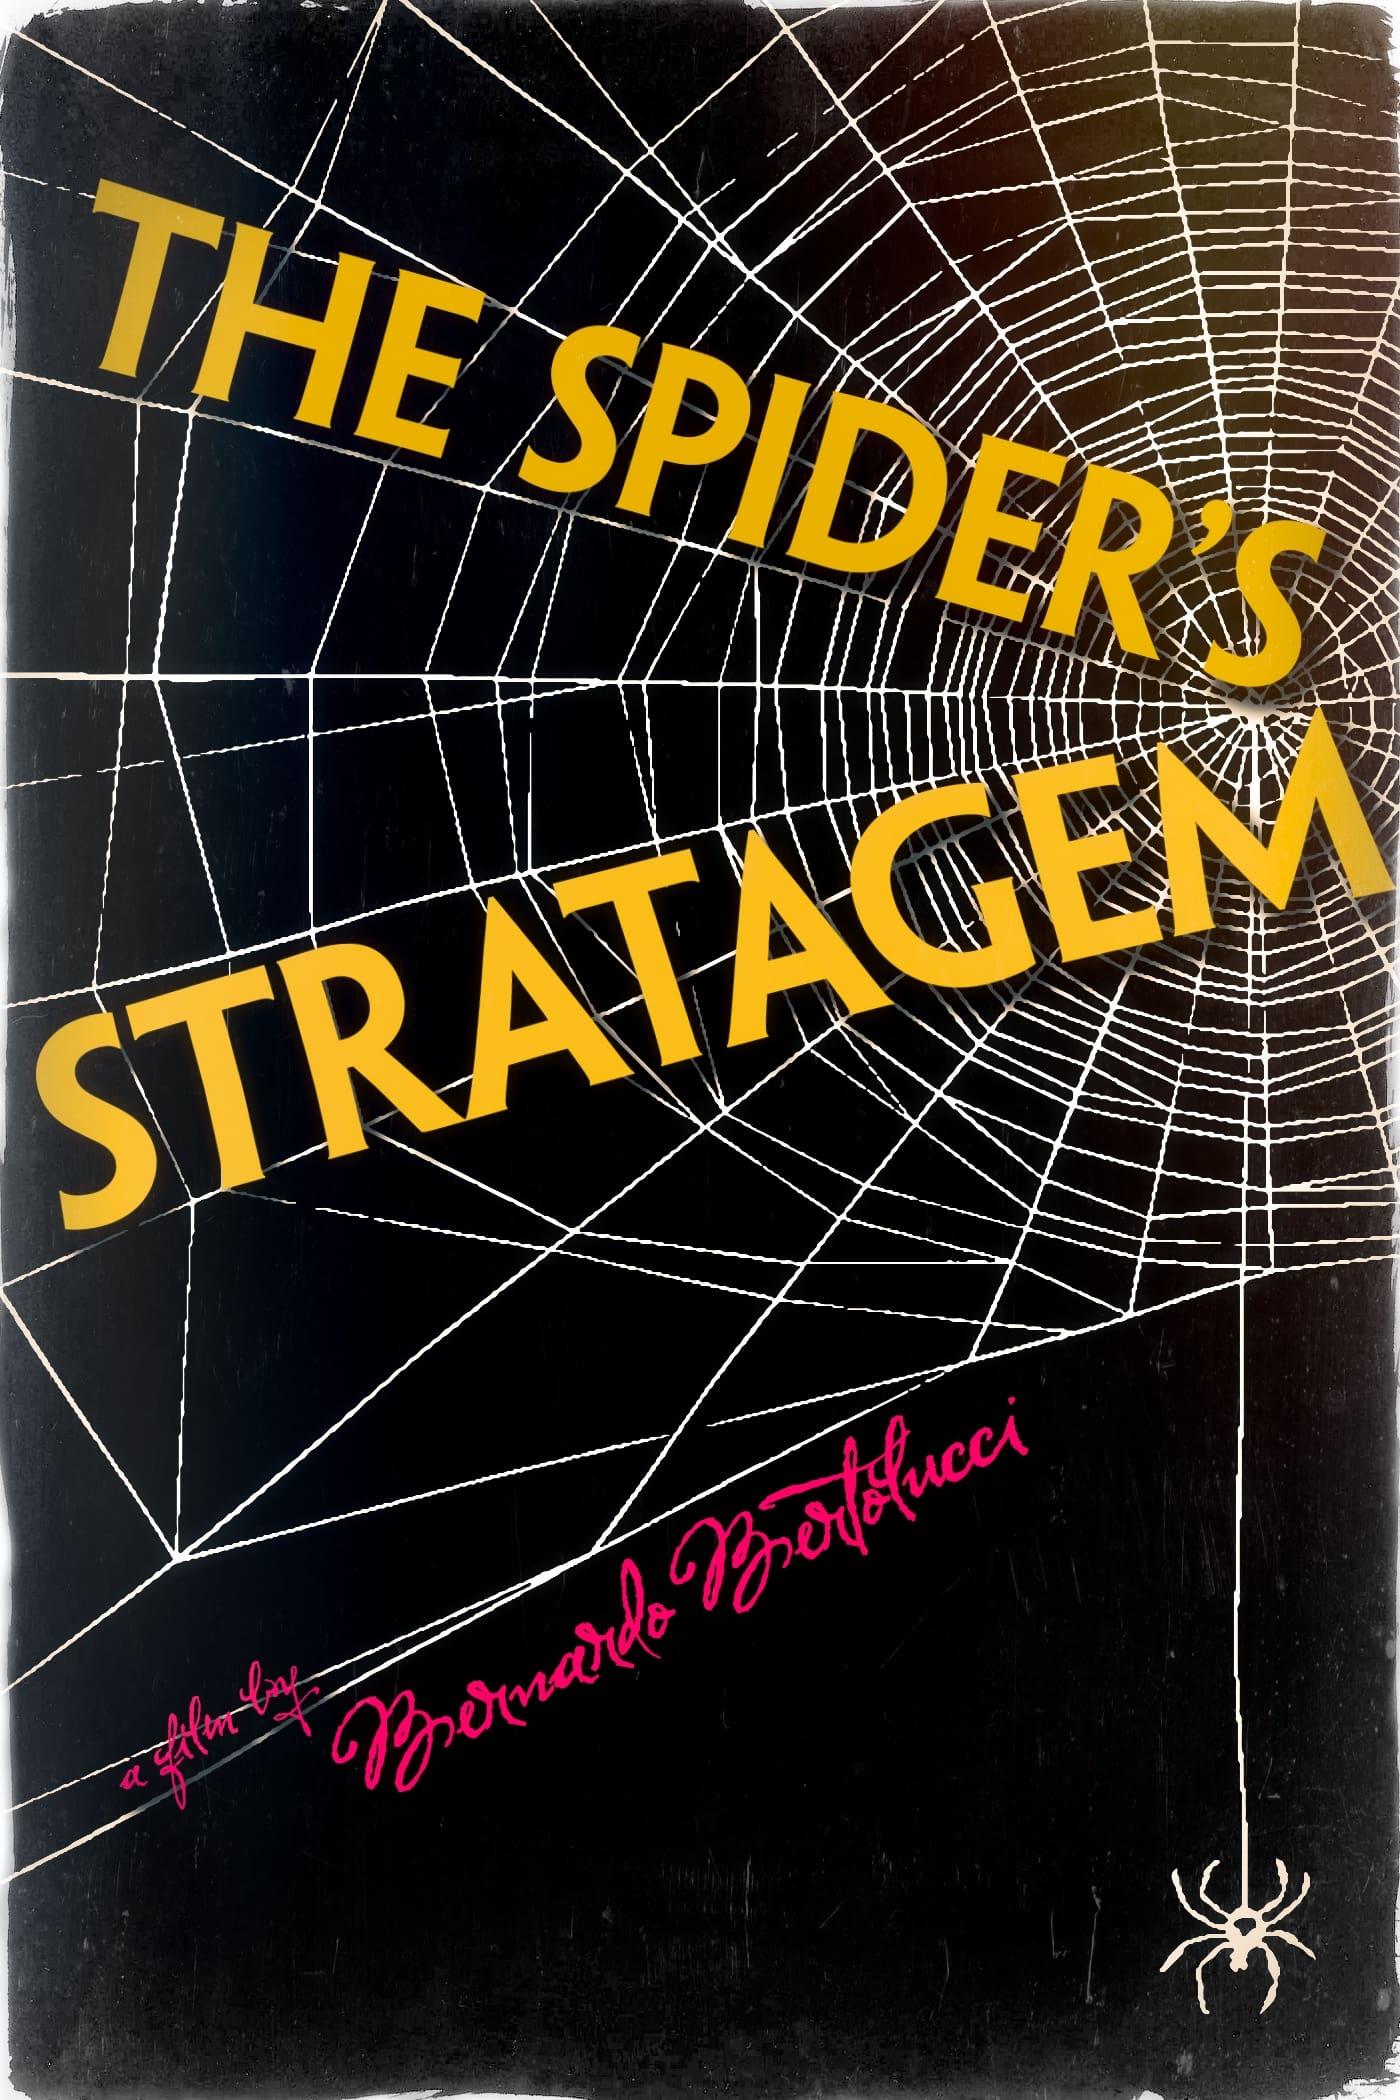 The Spider's Stratagem poster